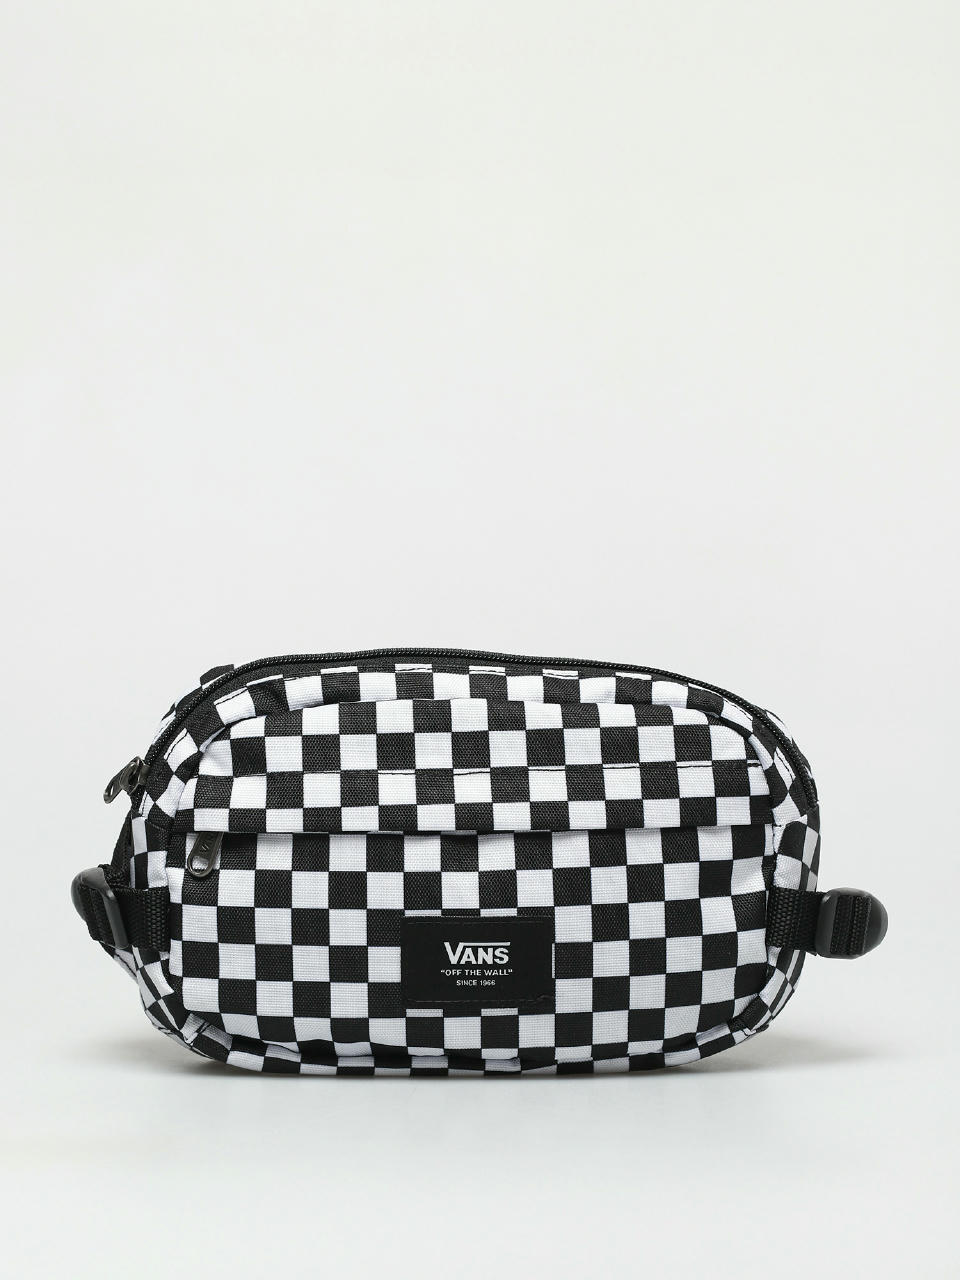 Vans Aliso II Hip Pack Bum bag (black/white